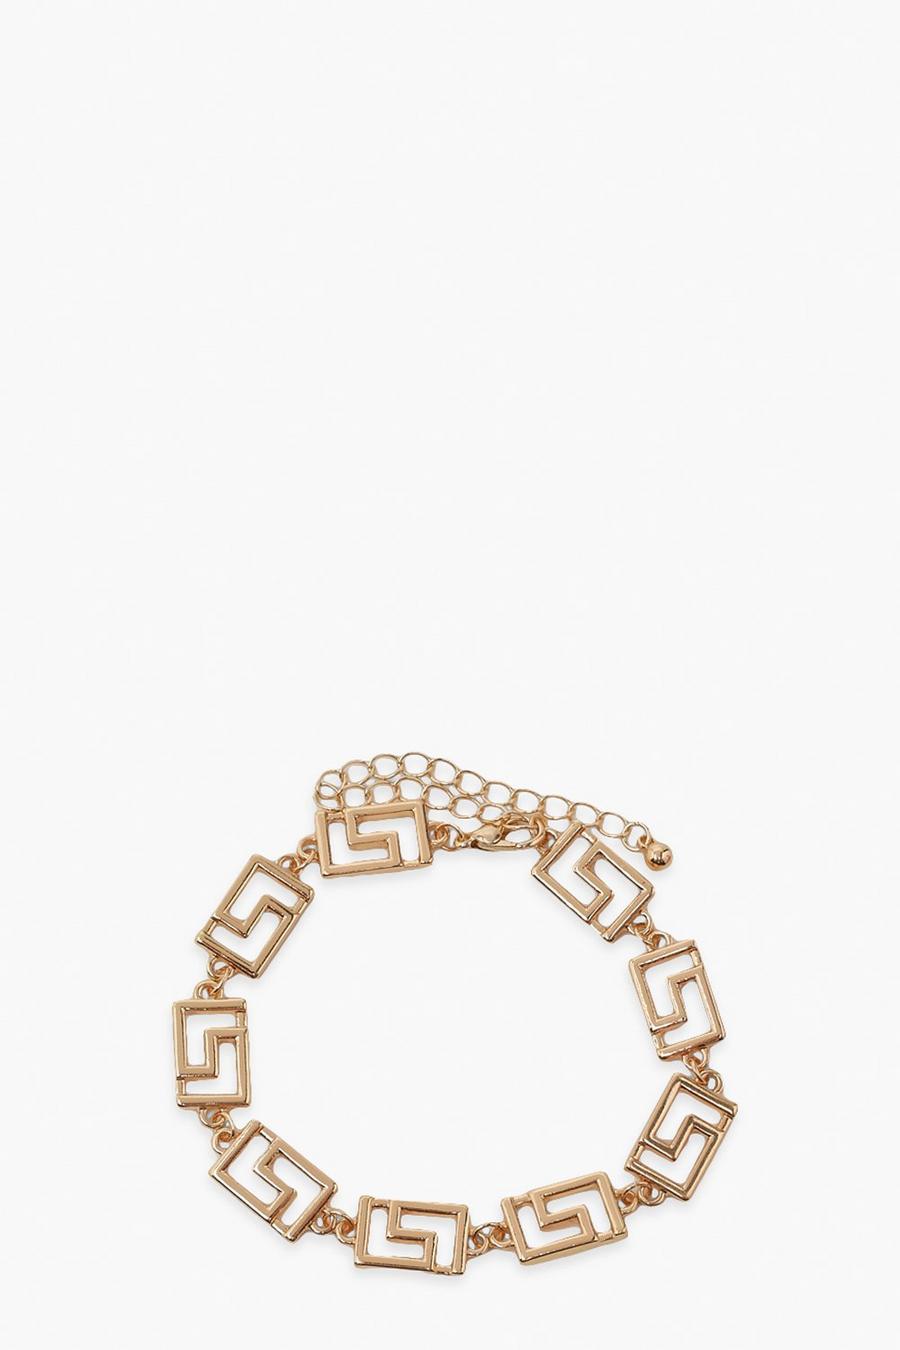 Gold Greek Key Link Chain Bracelet